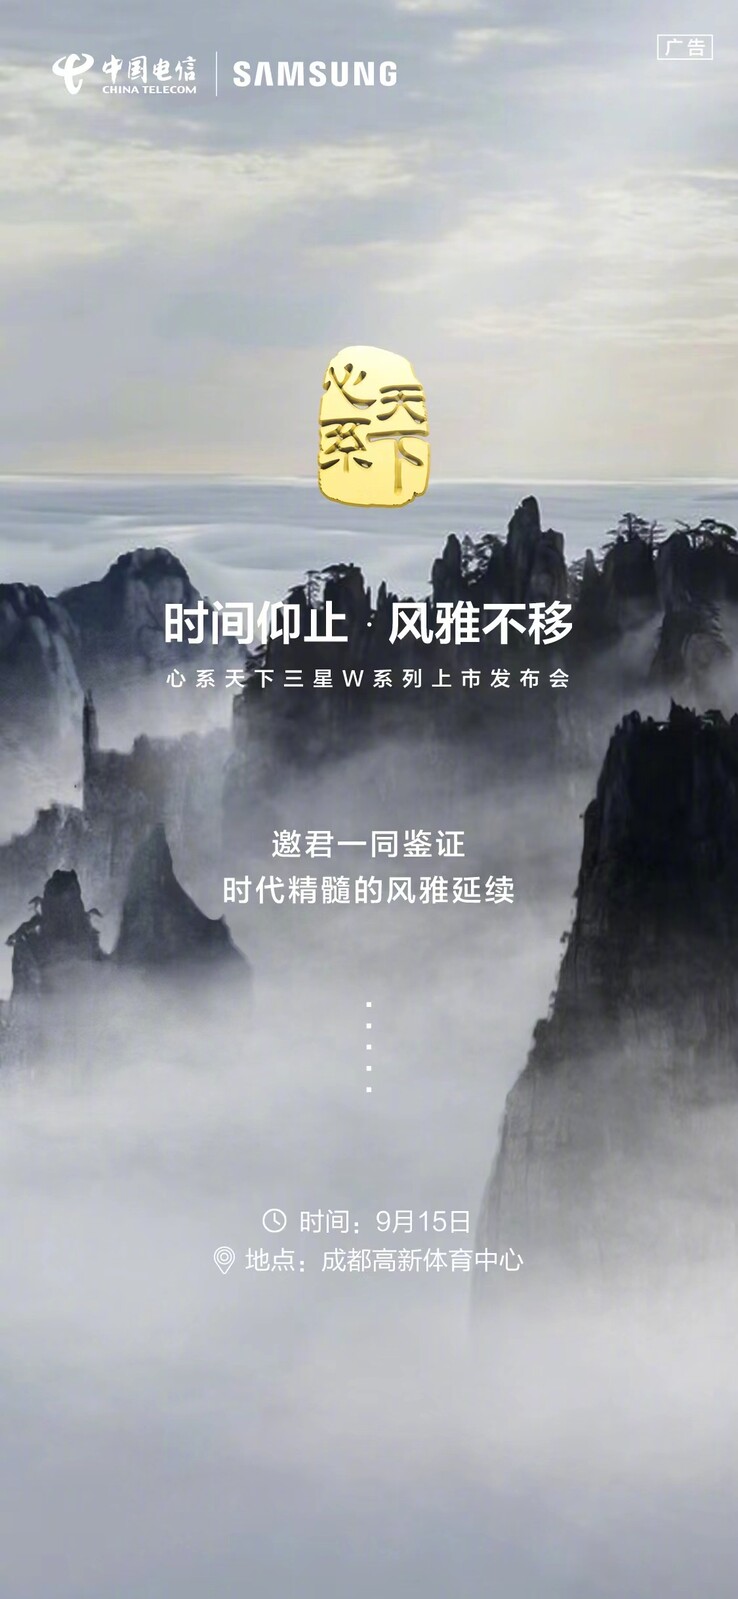 Il poster del Samsung W24. (Samsung CN via Weibo)